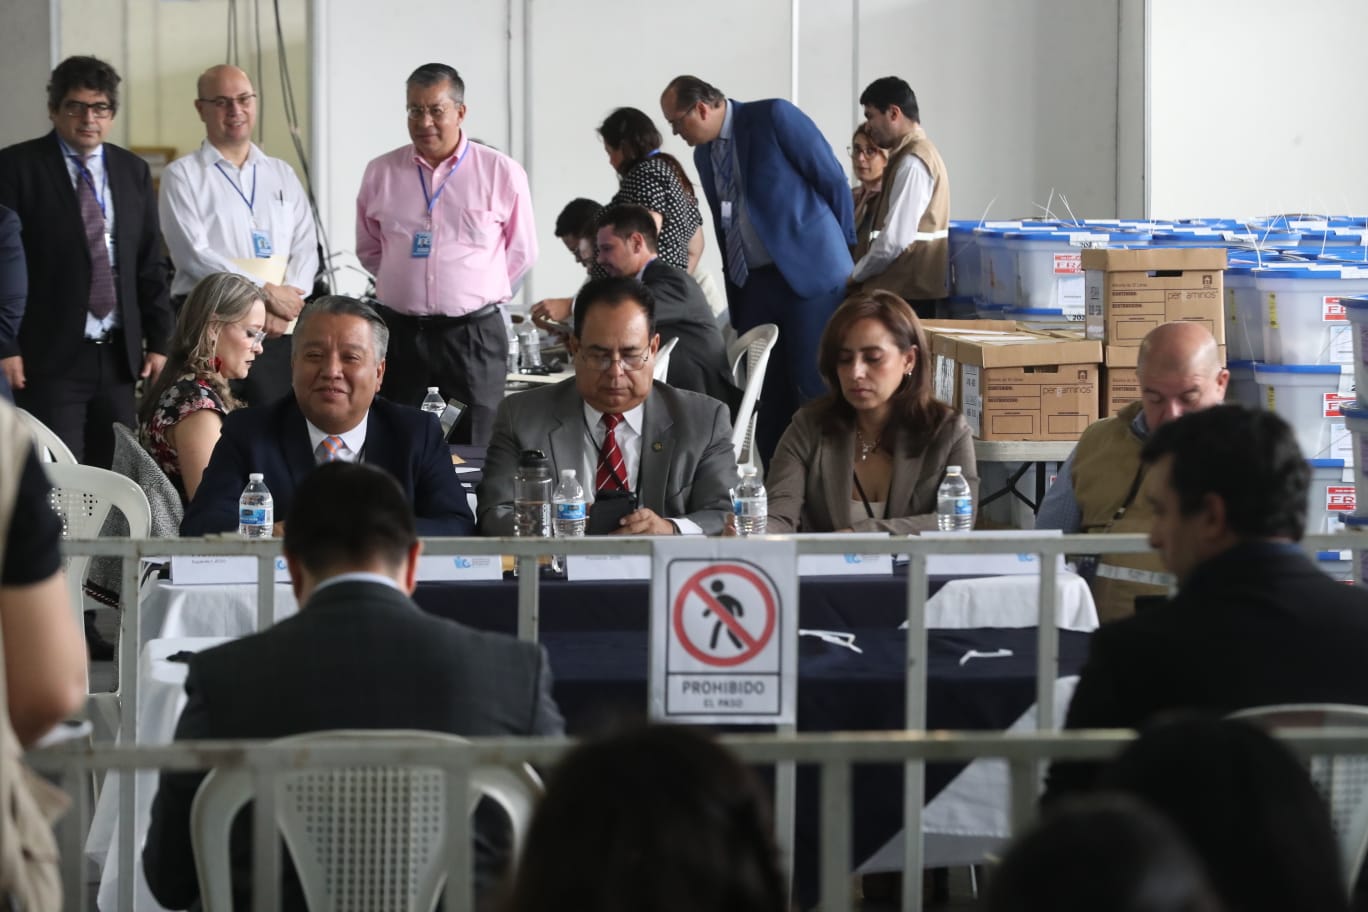 La Junta Electoral Departamental de Guatemala concluyó sin inconvenientes la audiencia de revisión. Fotografía: Prensa Libre (Roberto López). 